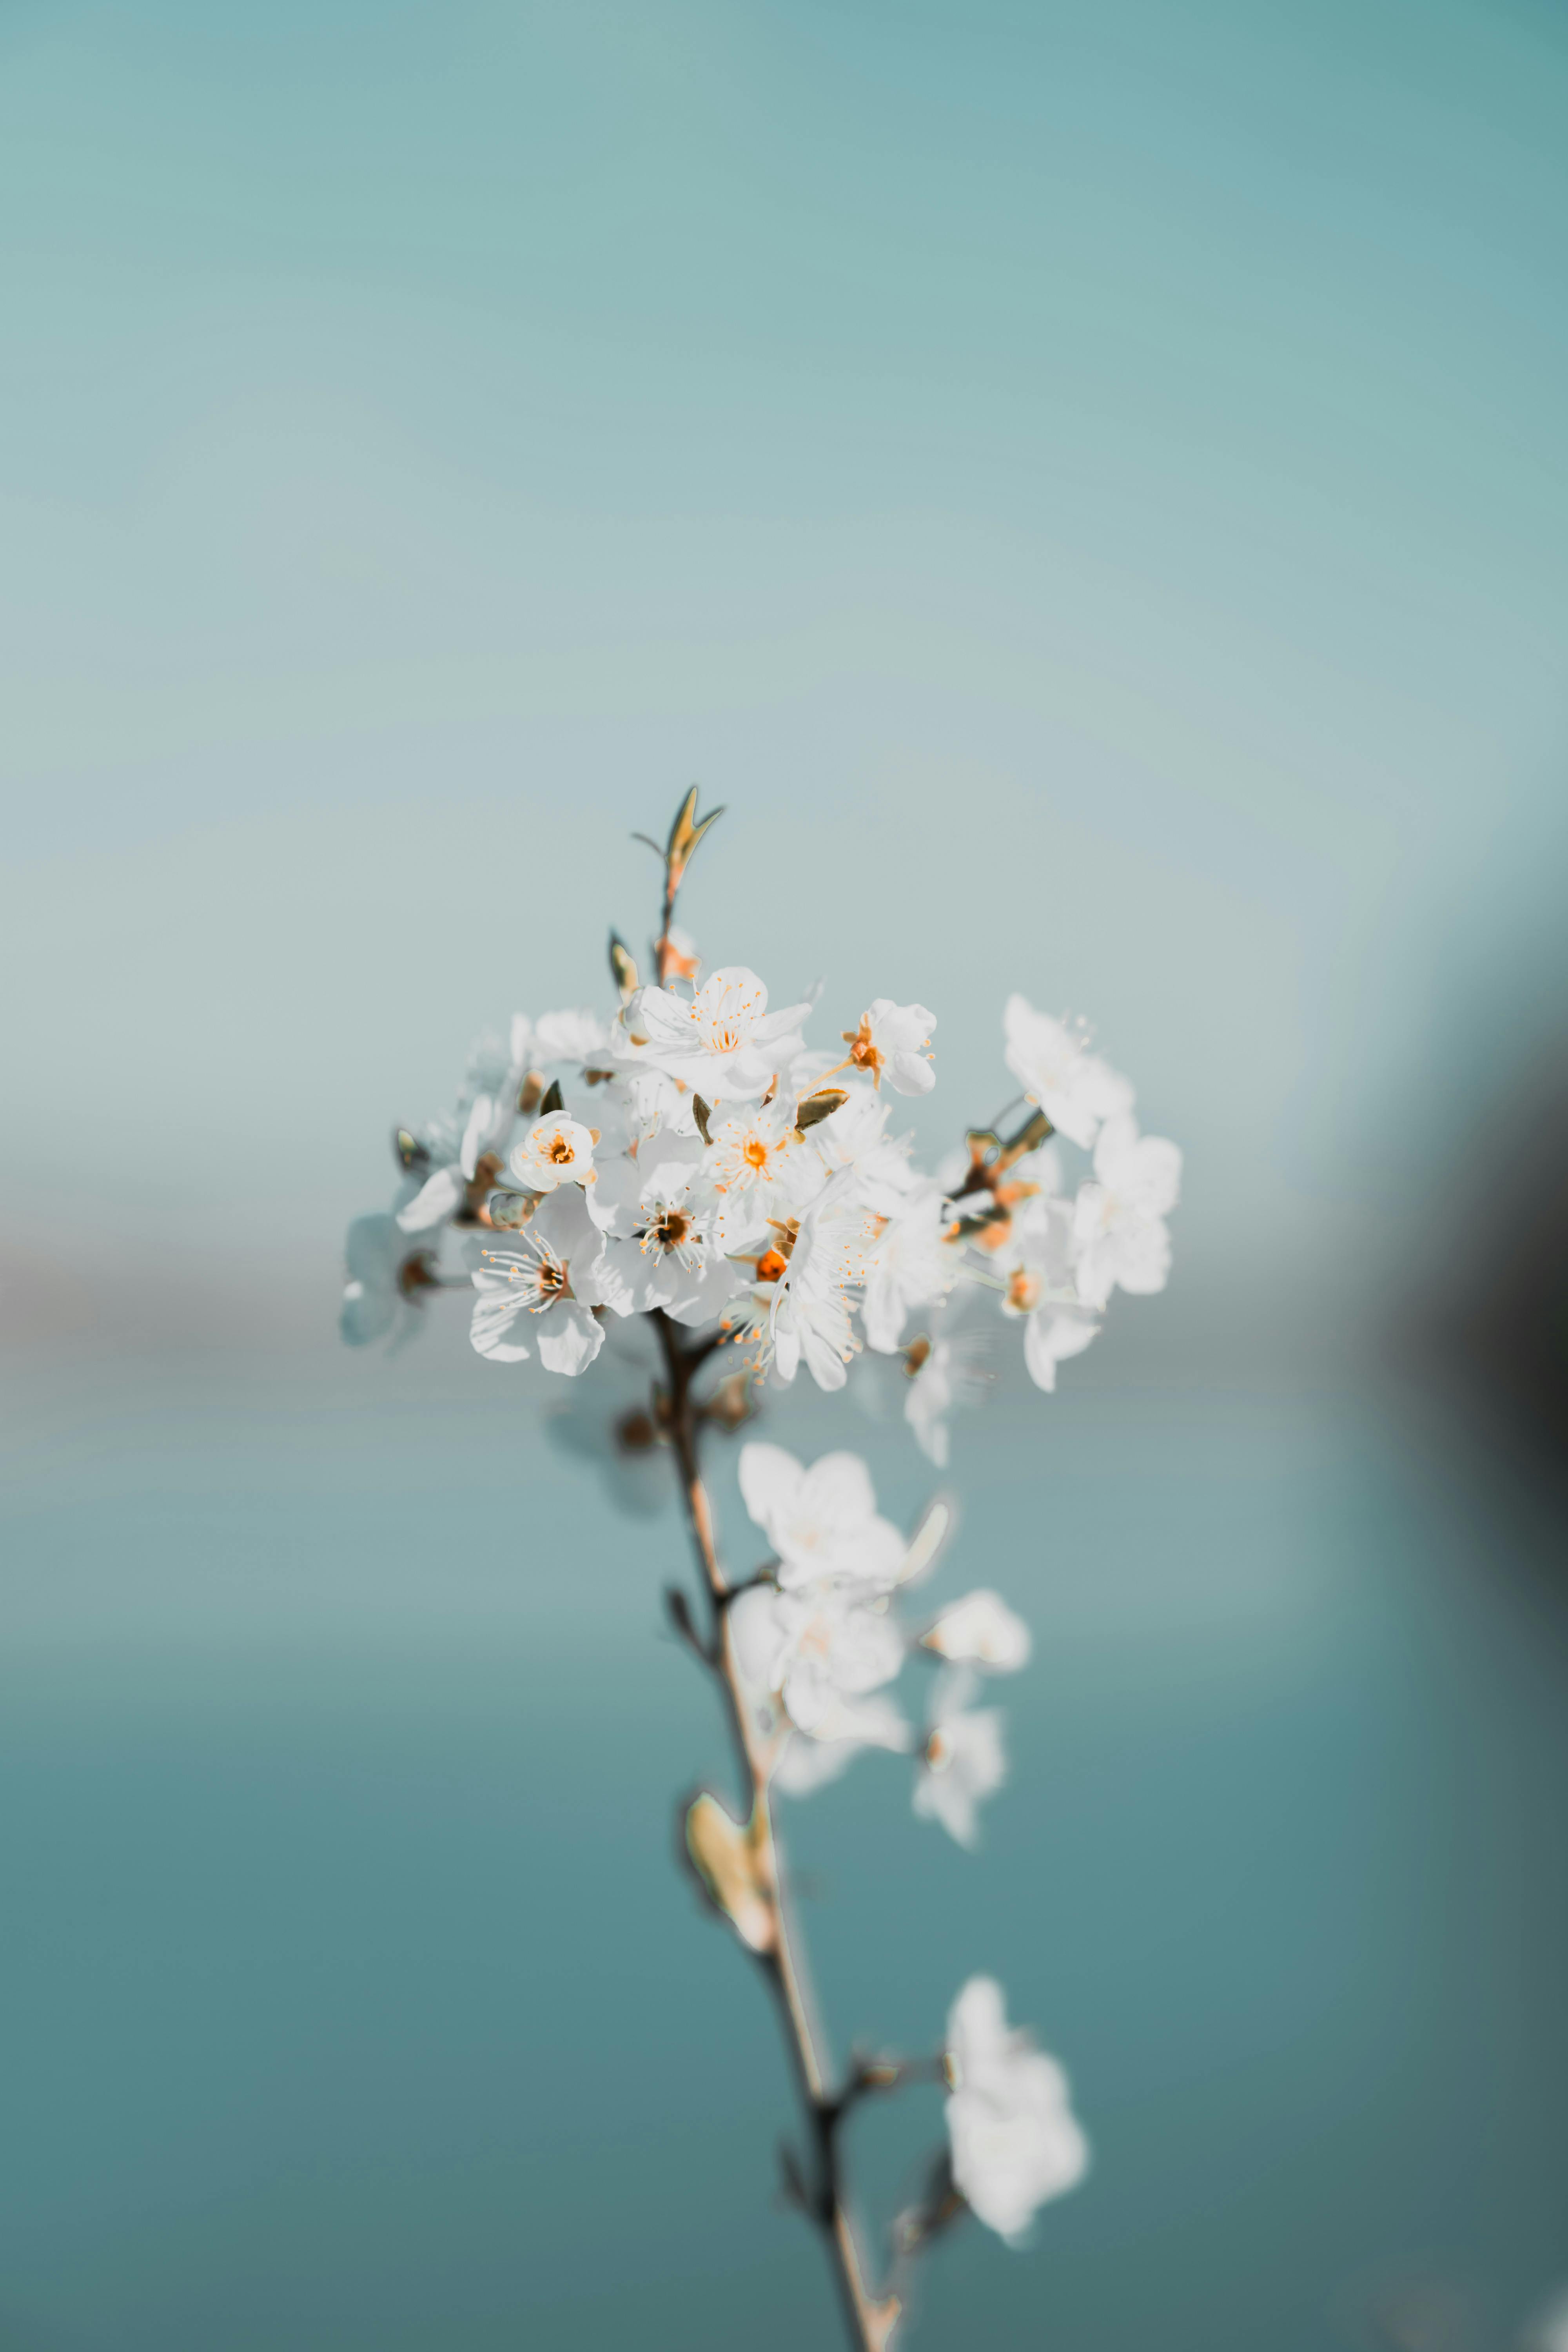 Trải nghiệm cảm giác bình yên với hình ảnh hoa trắng nhỏ lá xanh miễn phí. Với những đường cong mềm mại của hoa trắng đích thật tạo cho bạn cảm giác thư thái, dịu nhẹ. Miễn phí và dễ dàng tải xuống, còn chờ gì mà không tải về và thưởng thức ngay hôm nay?